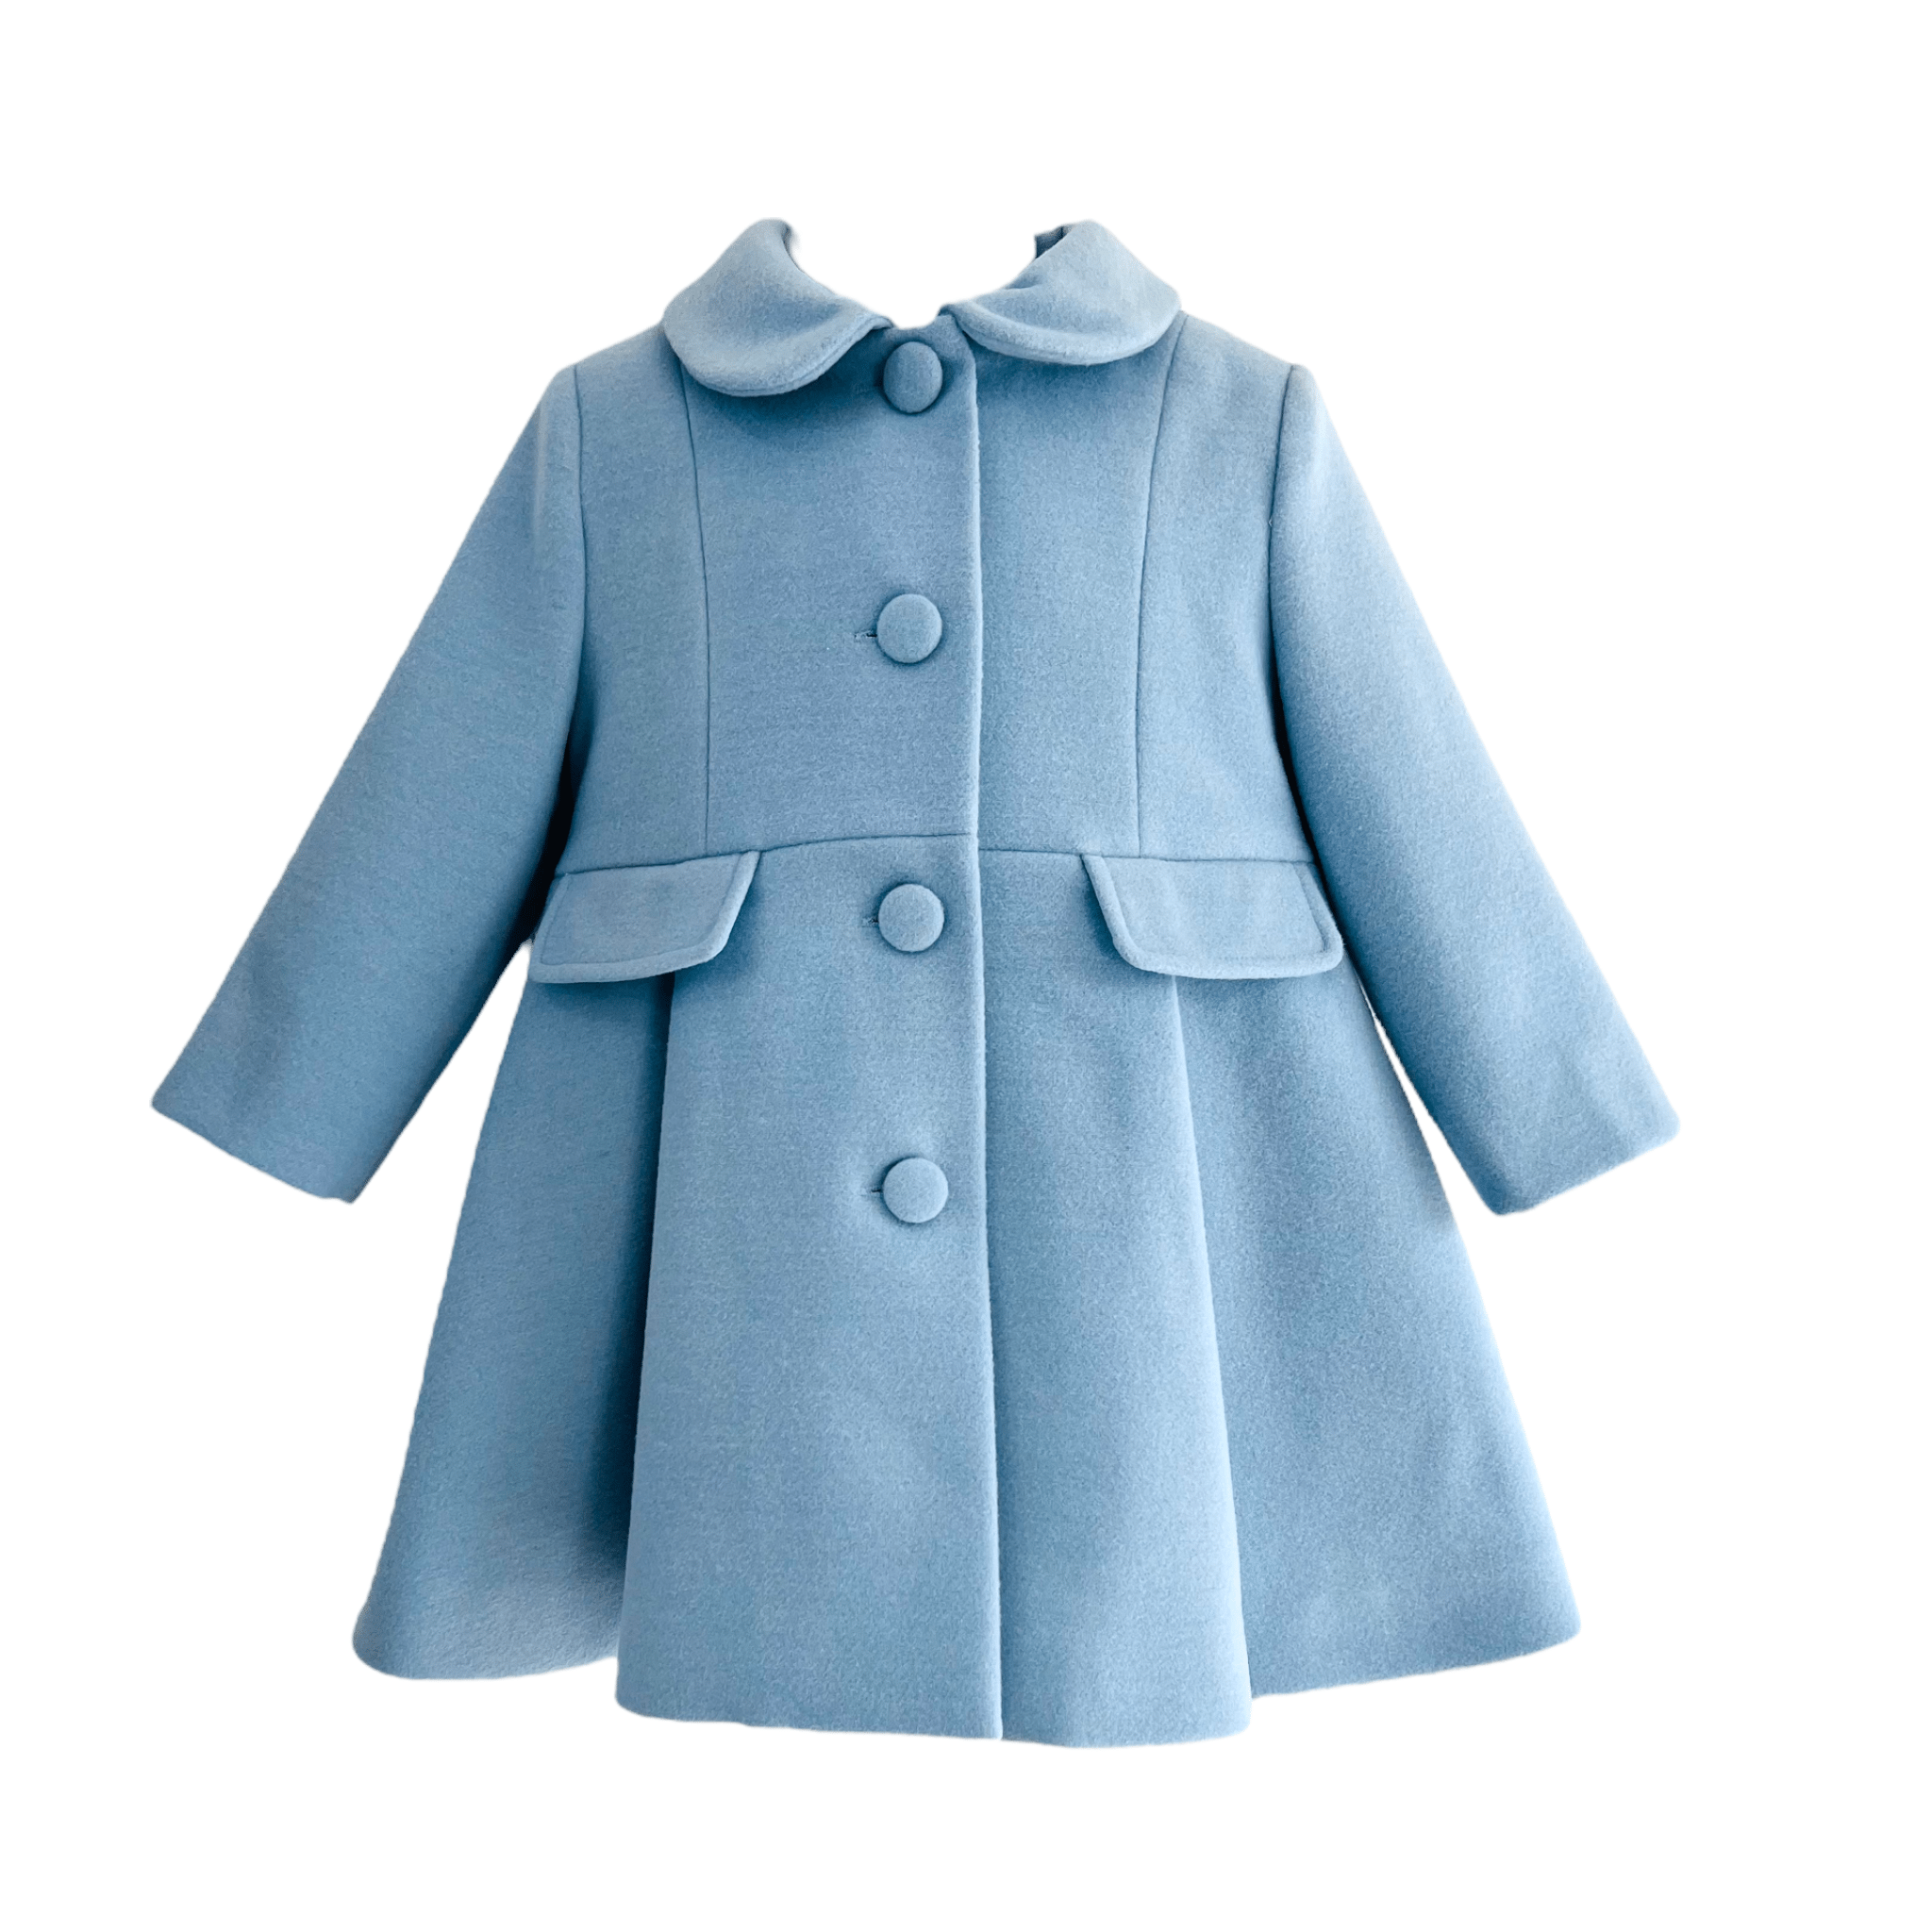 Bimbalò Coats & Jackets Bimbalò Girls Light Blue Collared Coat